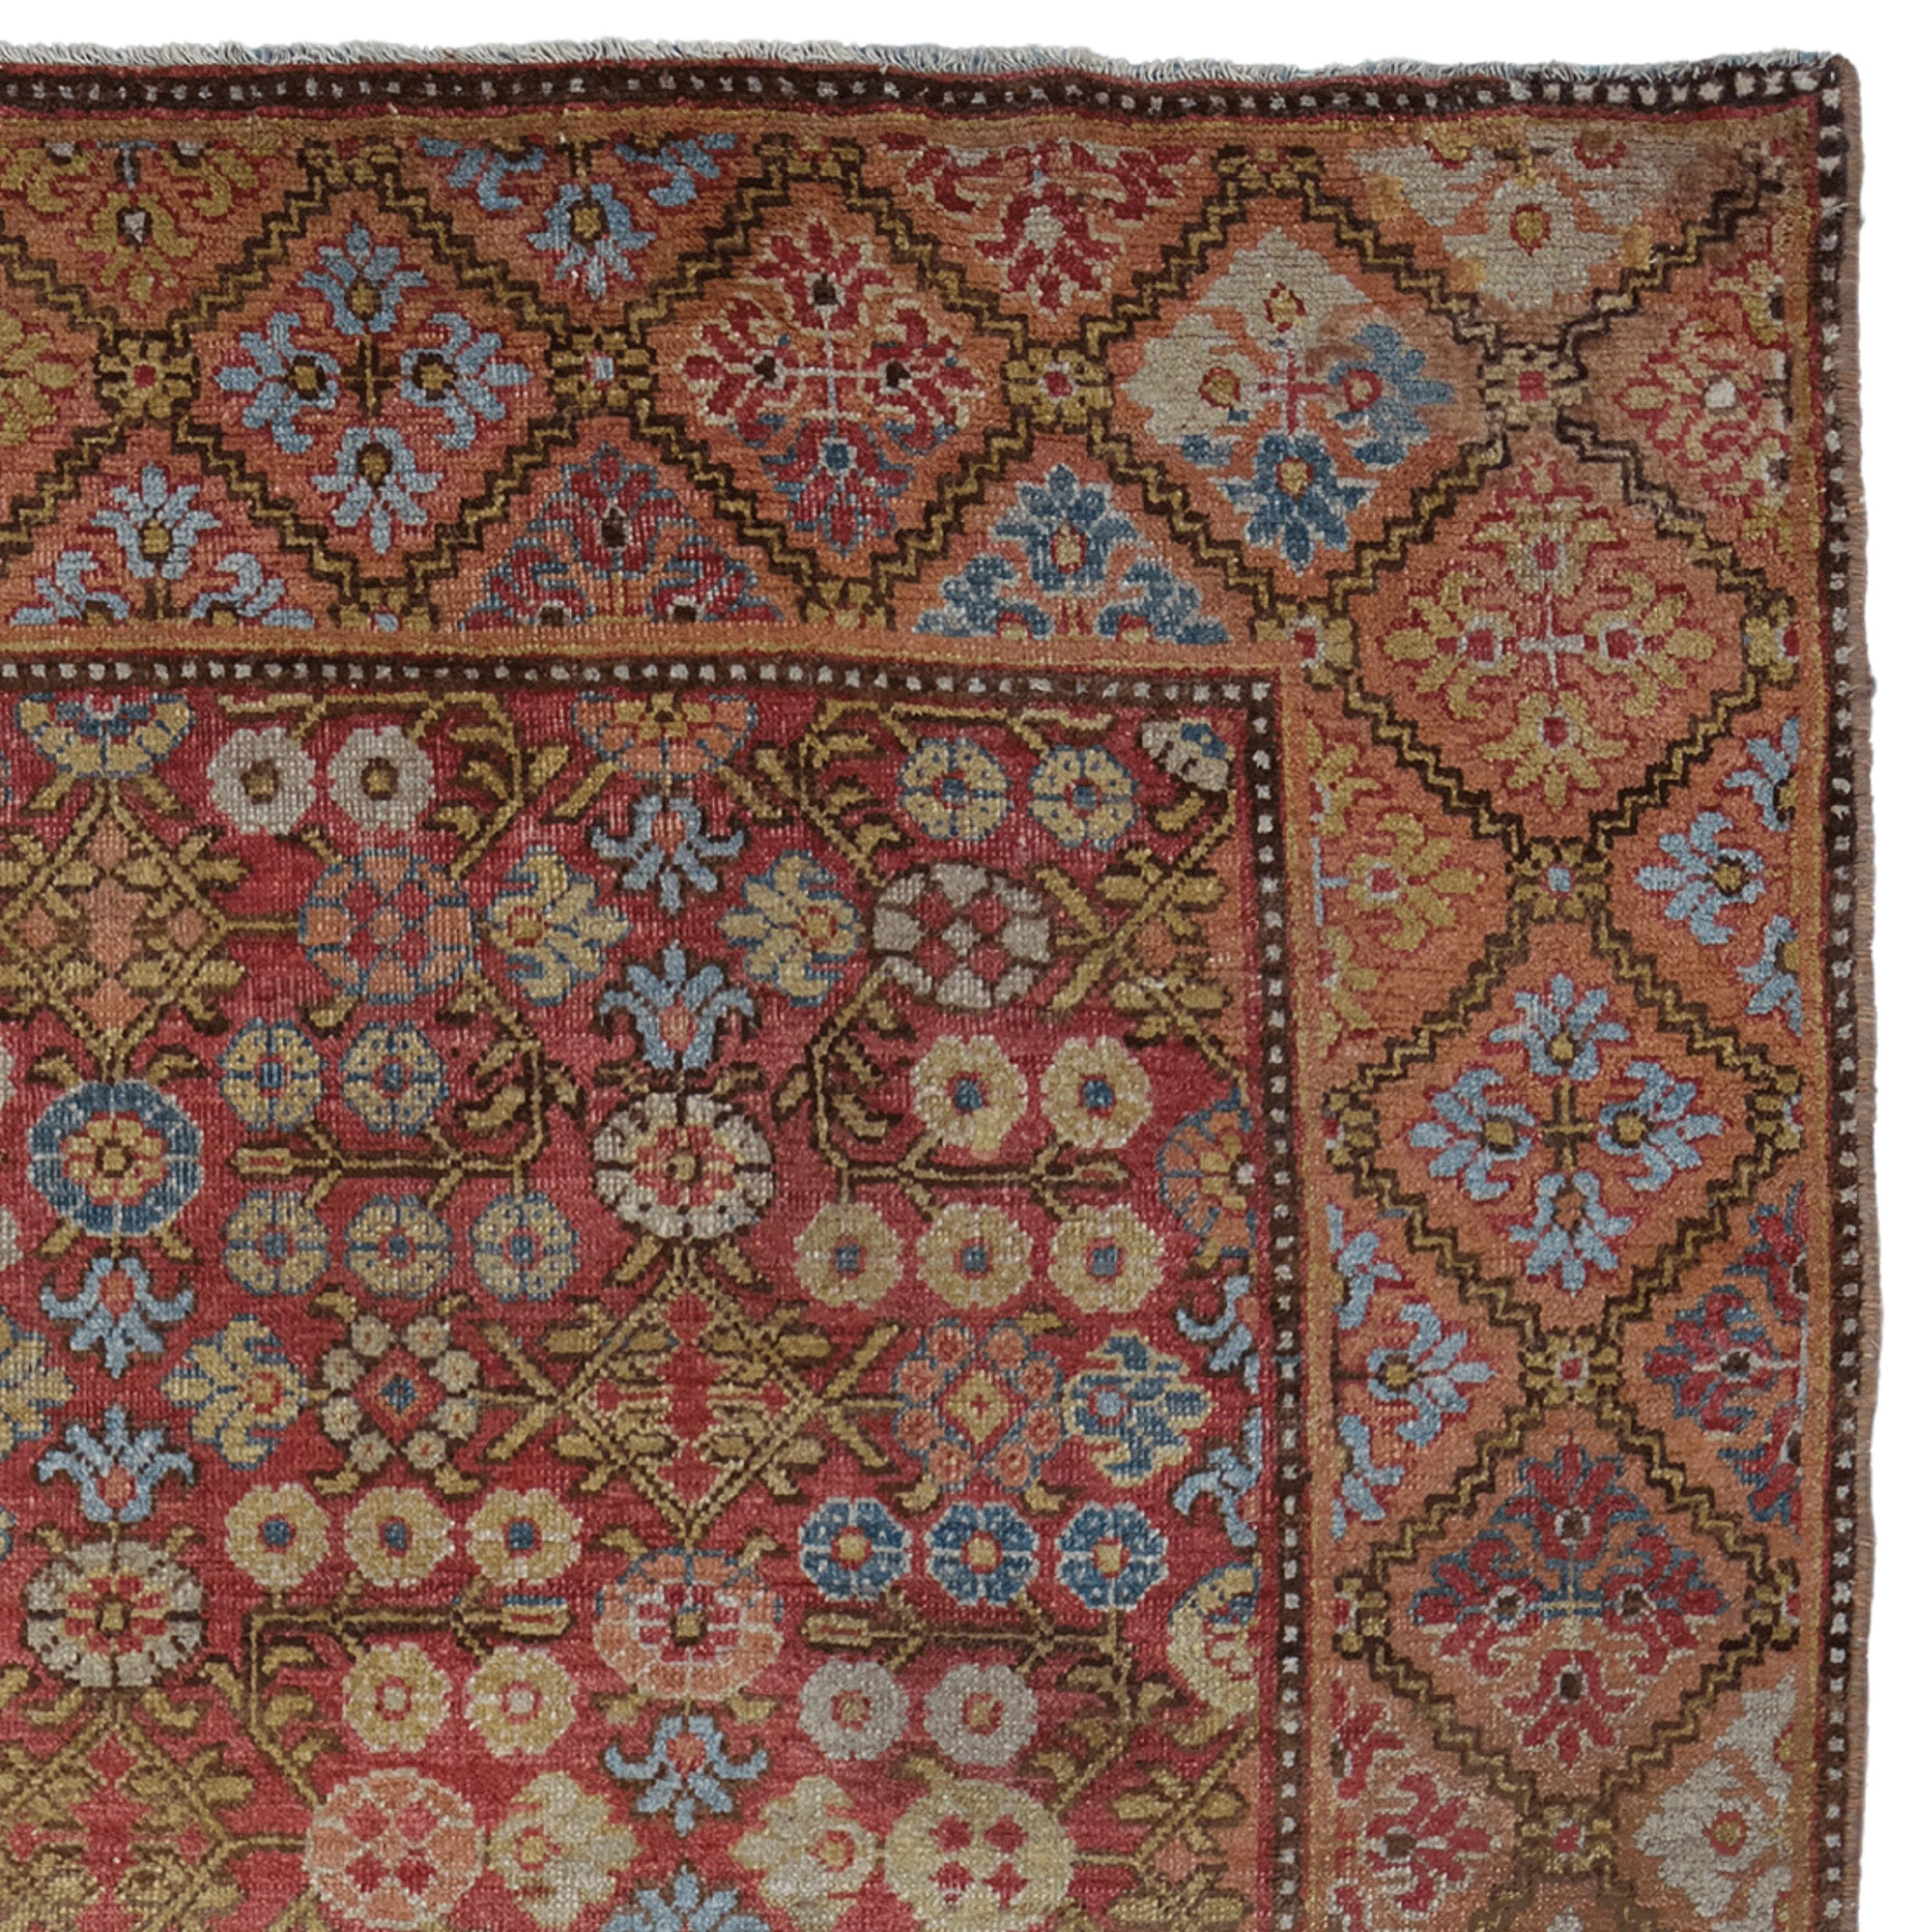 Antique Khotan Rug - 19th Century Khotan Rug, Antique Asia Rug, Antique Rug In Good Condition For Sale In Sultanahmet, 34